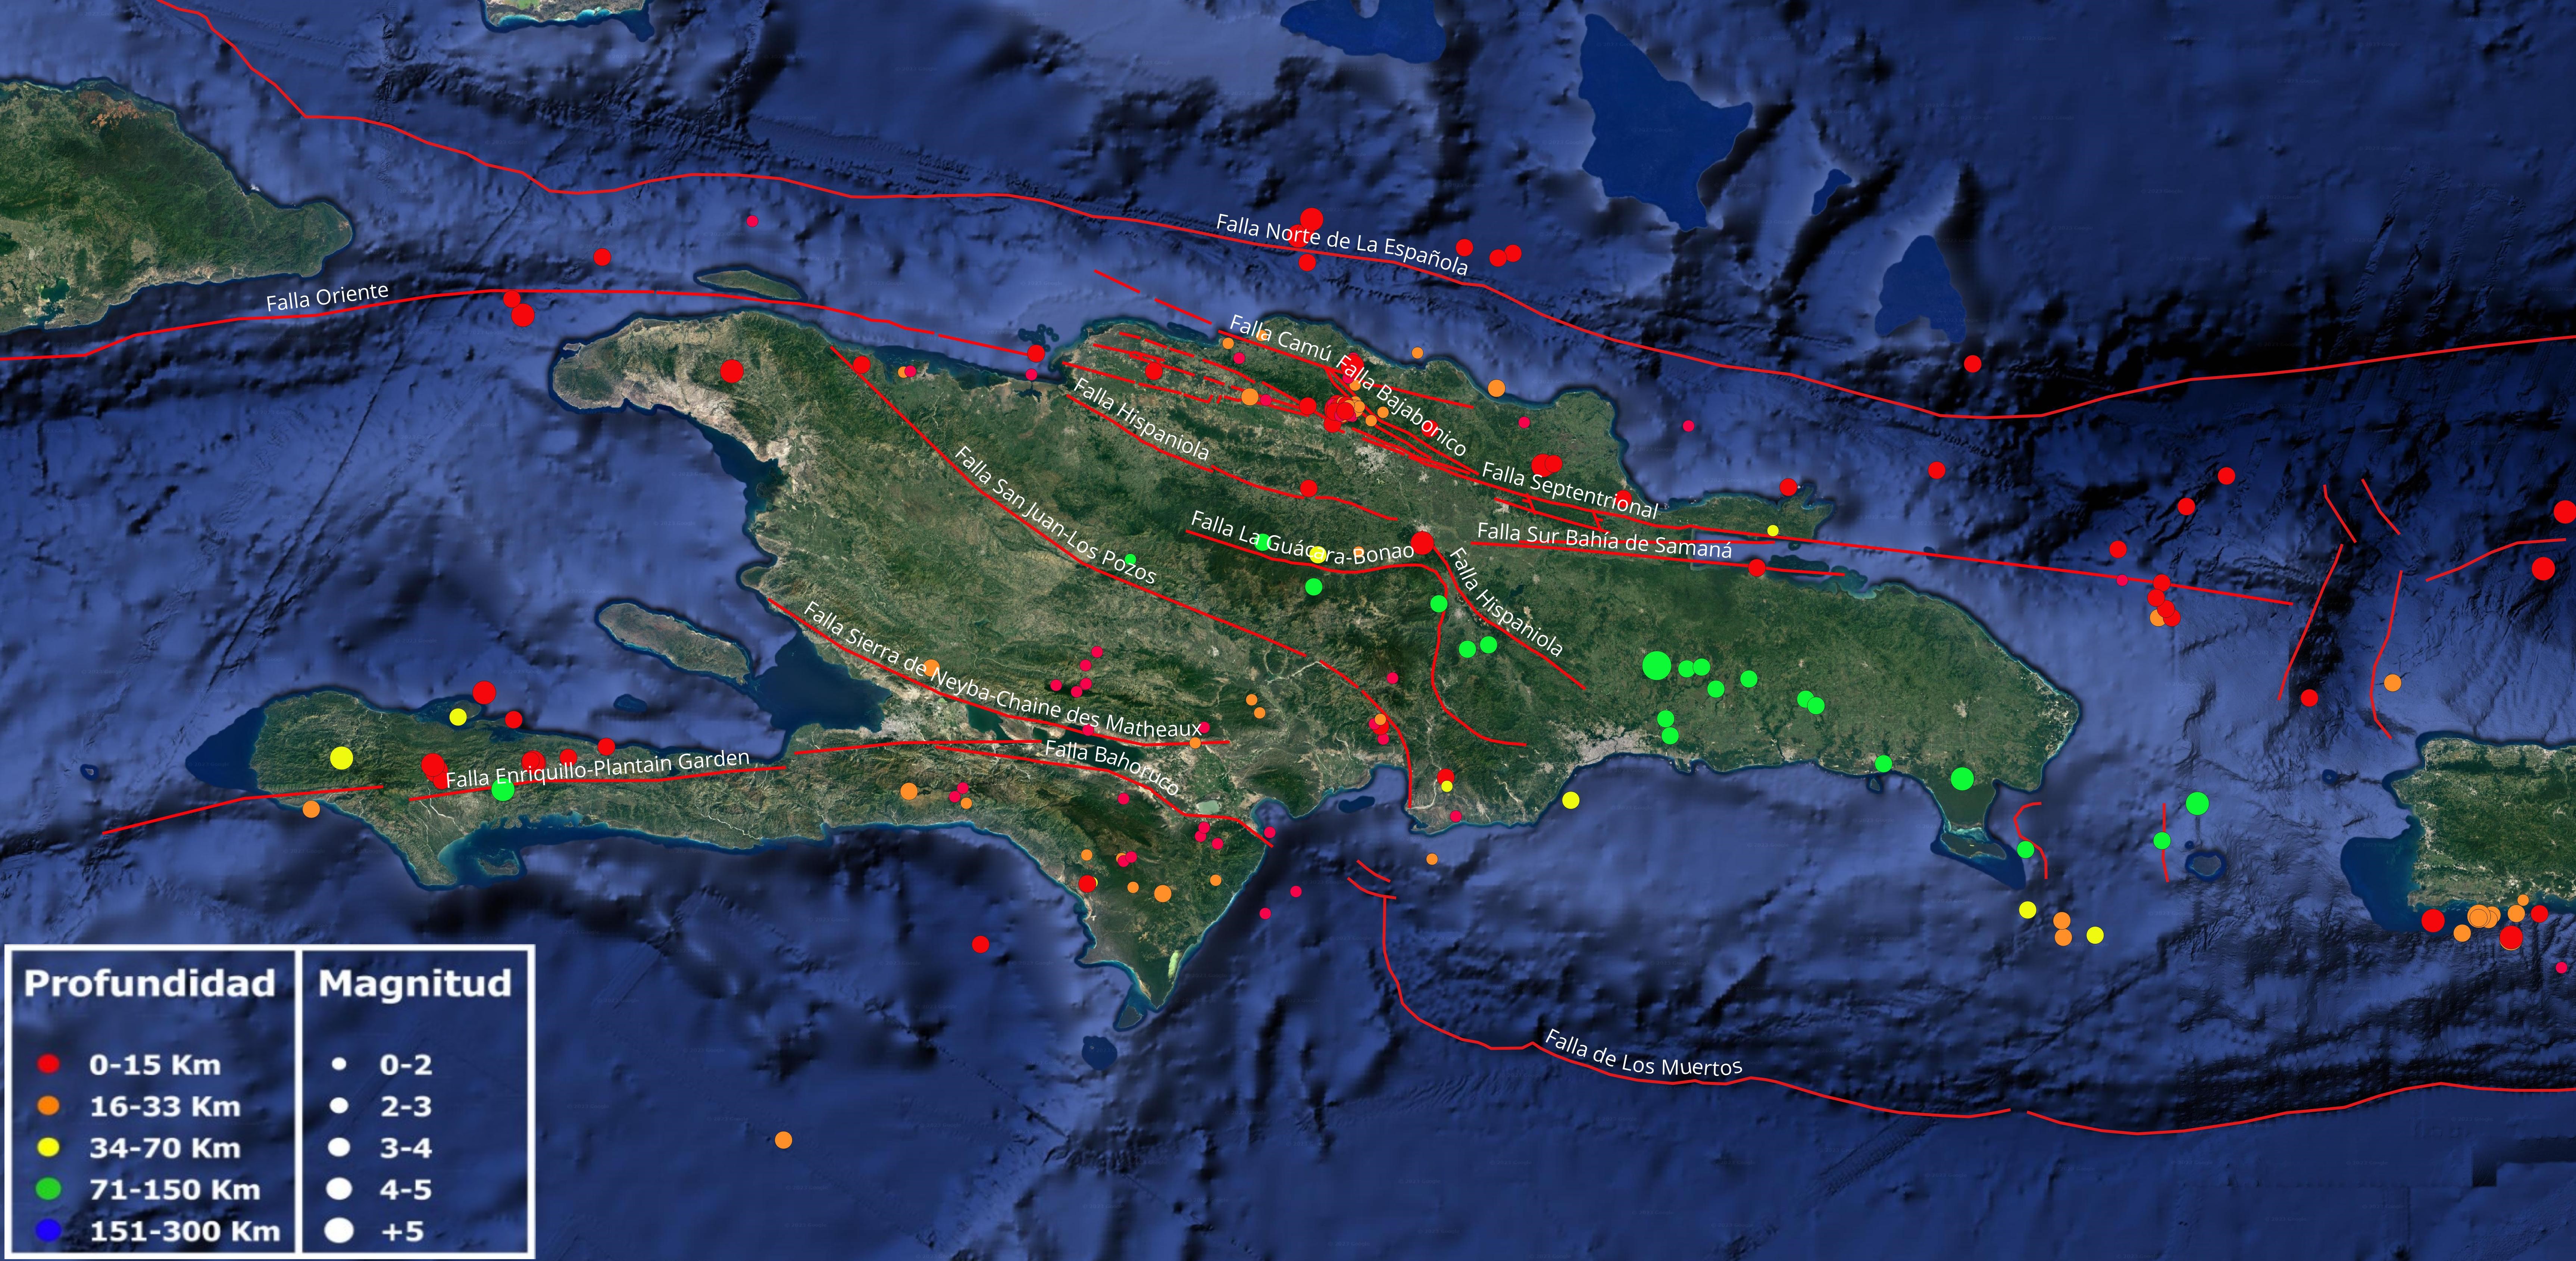 Imagen N°1 : Mapa cortesía de Google Earth mostrando distribución de la sismicidad en el mes de septiembre 2023. Con líneas rojas, las principales fallas geológicas compiladas por diferentes autores según trabajos publicados